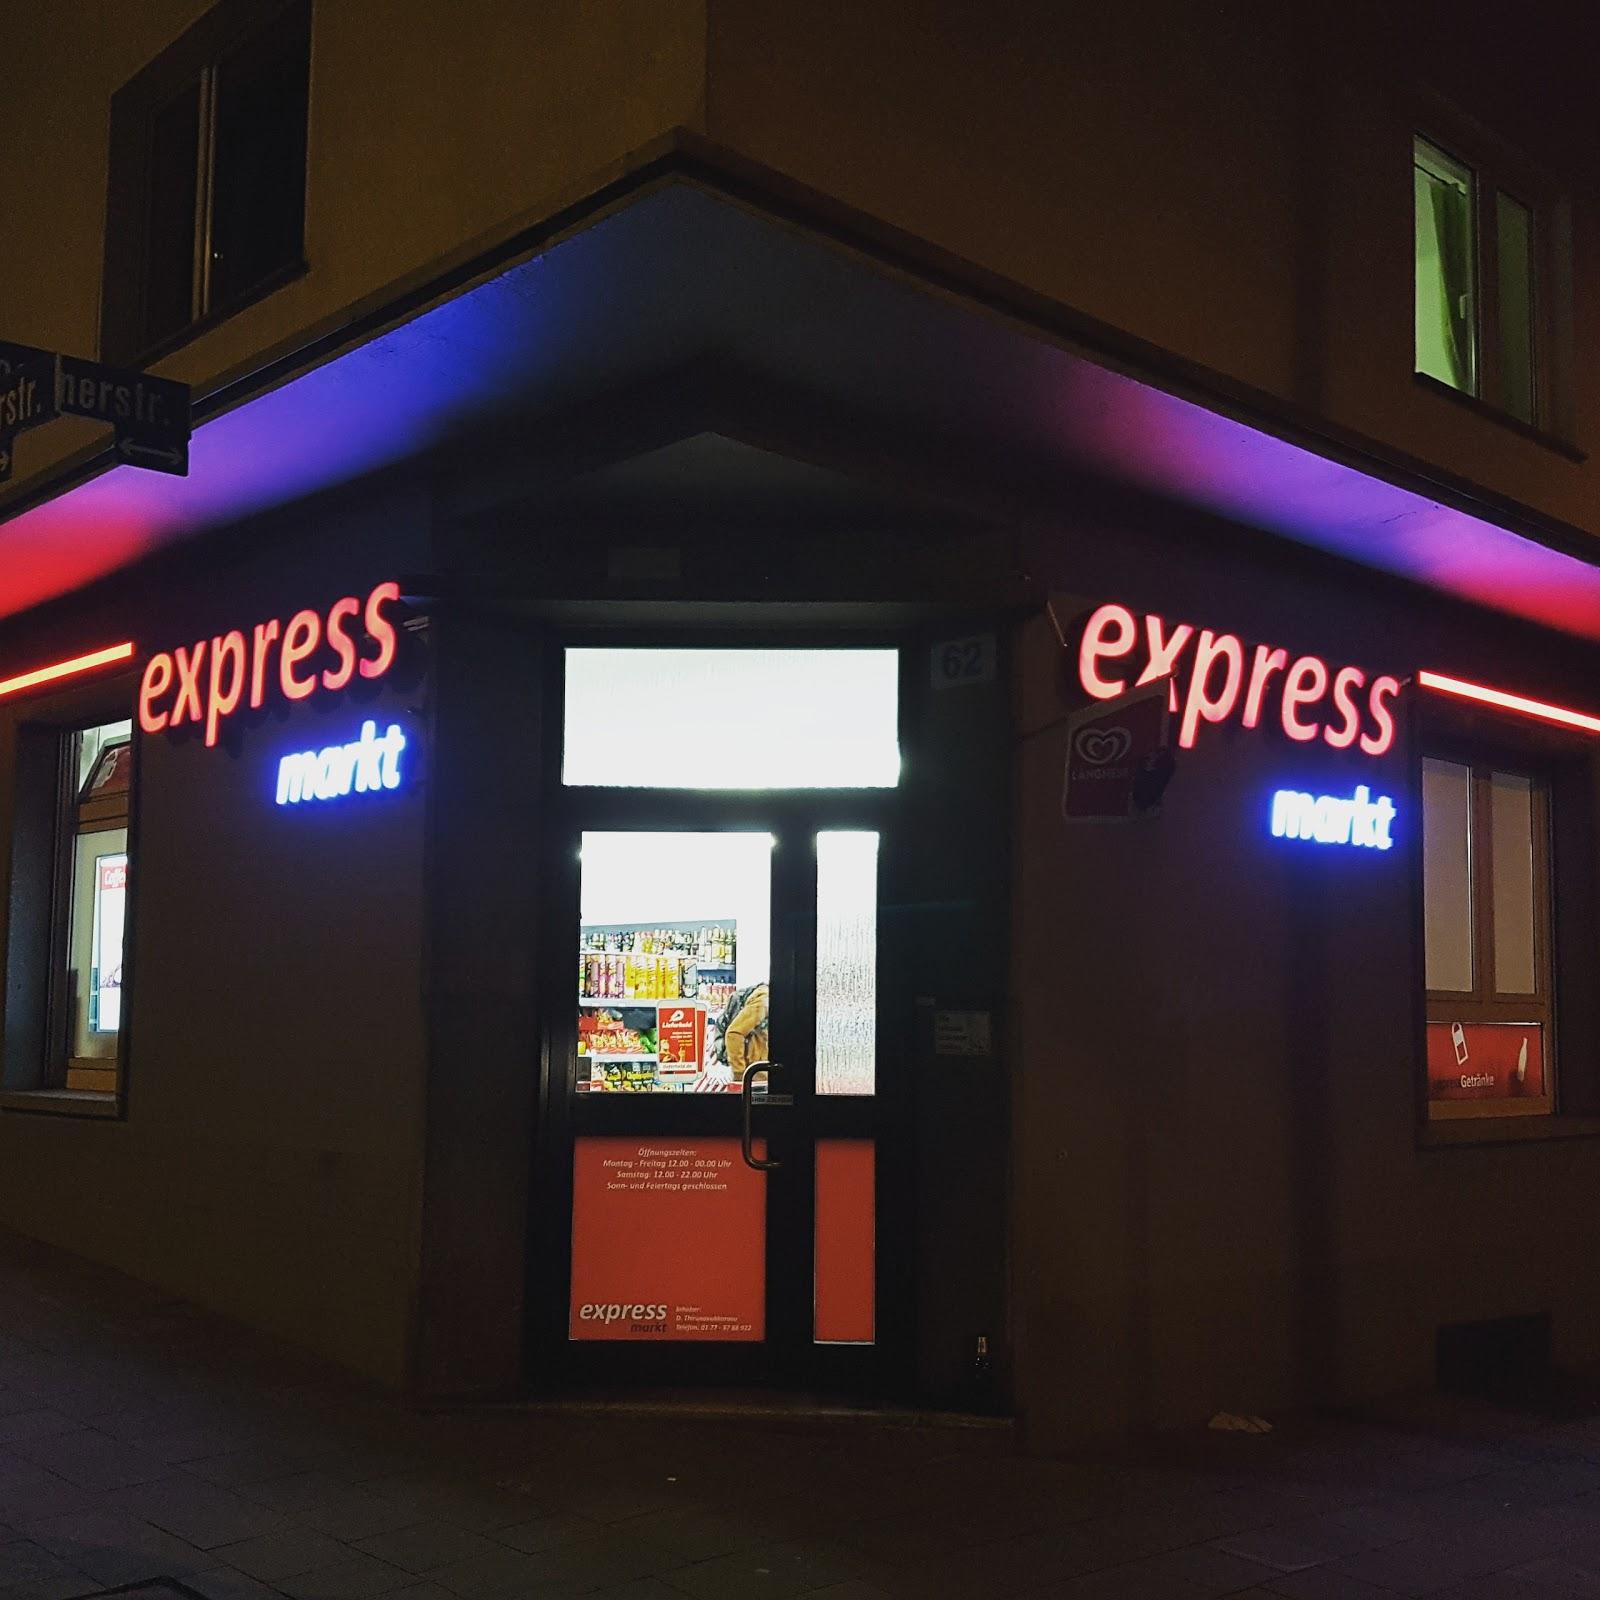 Restaurant "Express Markt" in Aachen